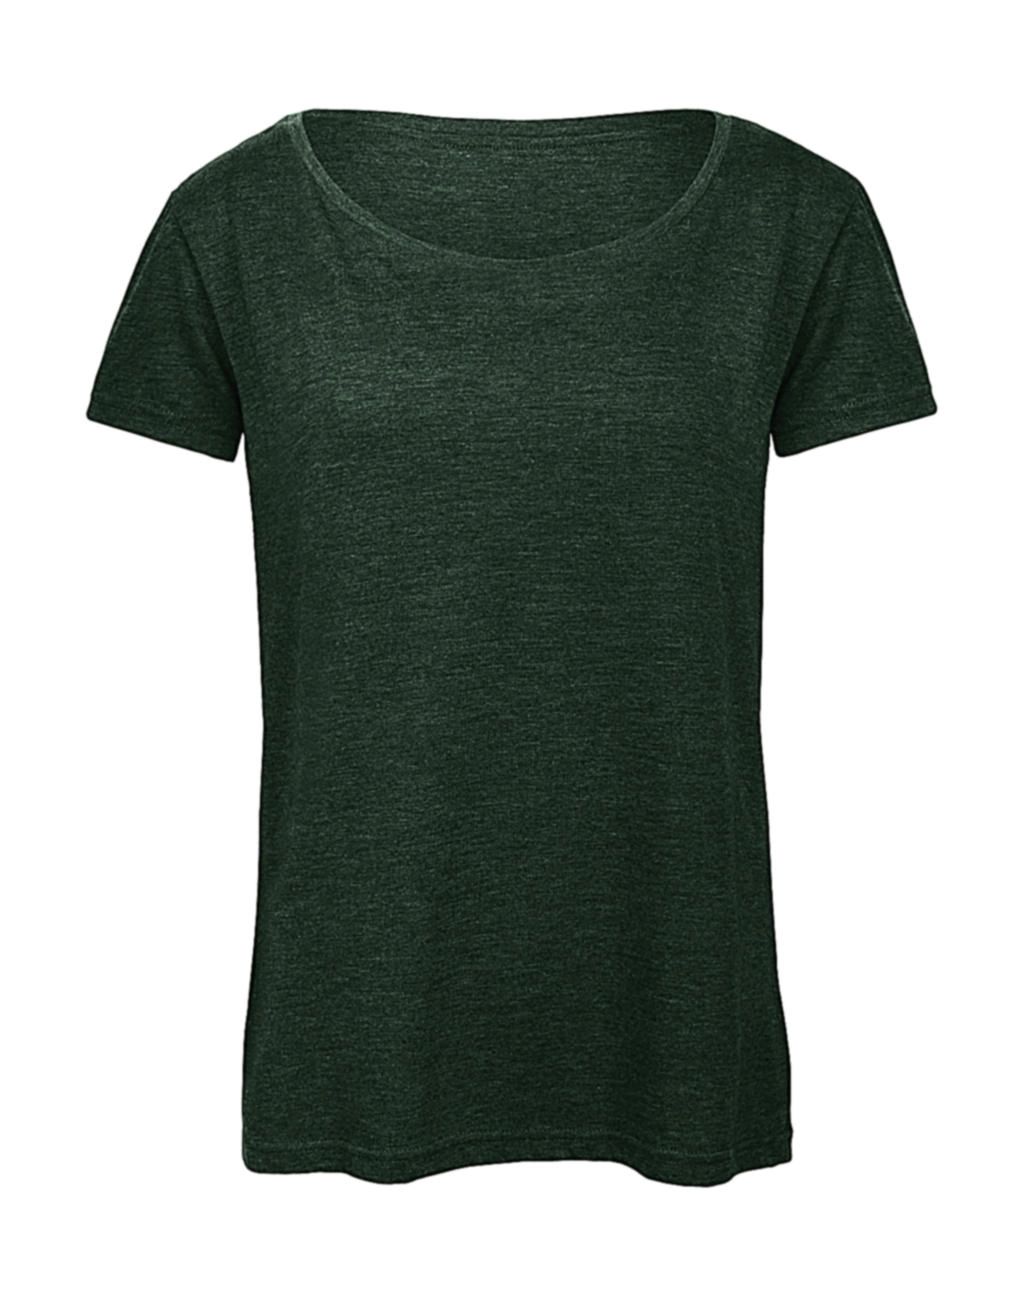 Triblend/women T-Shirt zum Besticken und Bedrucken in der Farbe Heather Forest mit Ihren Logo, Schriftzug oder Motiv.